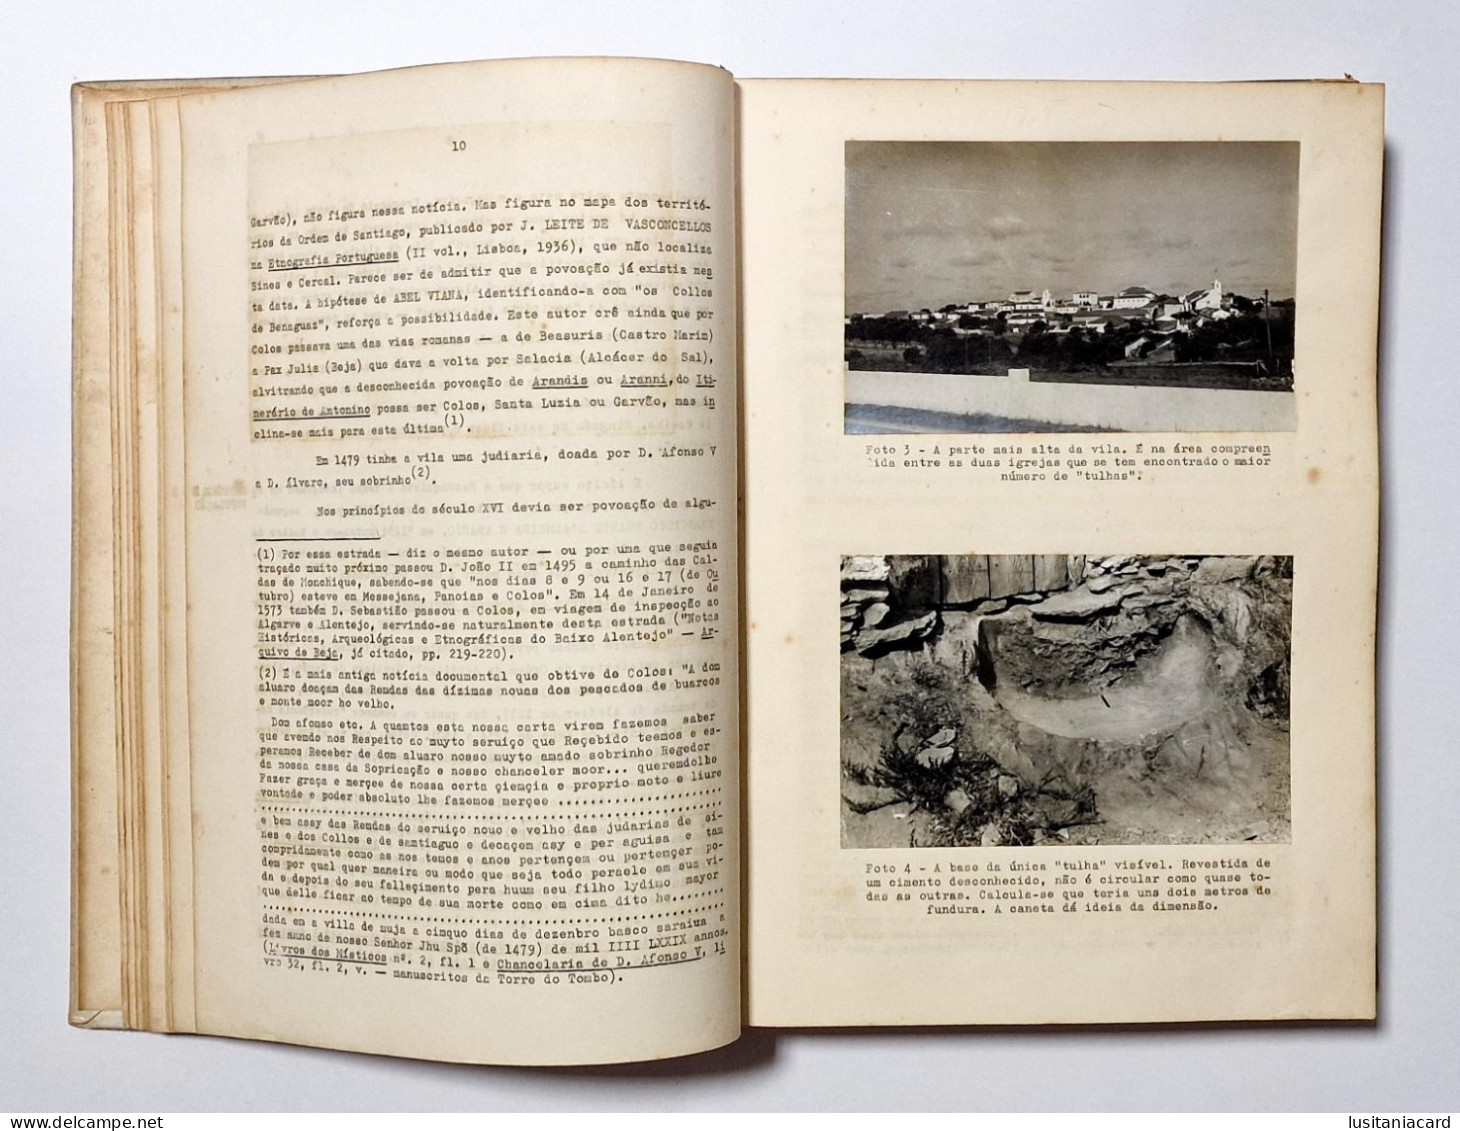 ALENTEJO-MONOGRAFIAS - Colos ( Alentejo) - Elementos Monograficos(Aut:Antonio Machado Guerreiro -1968) - Old Books